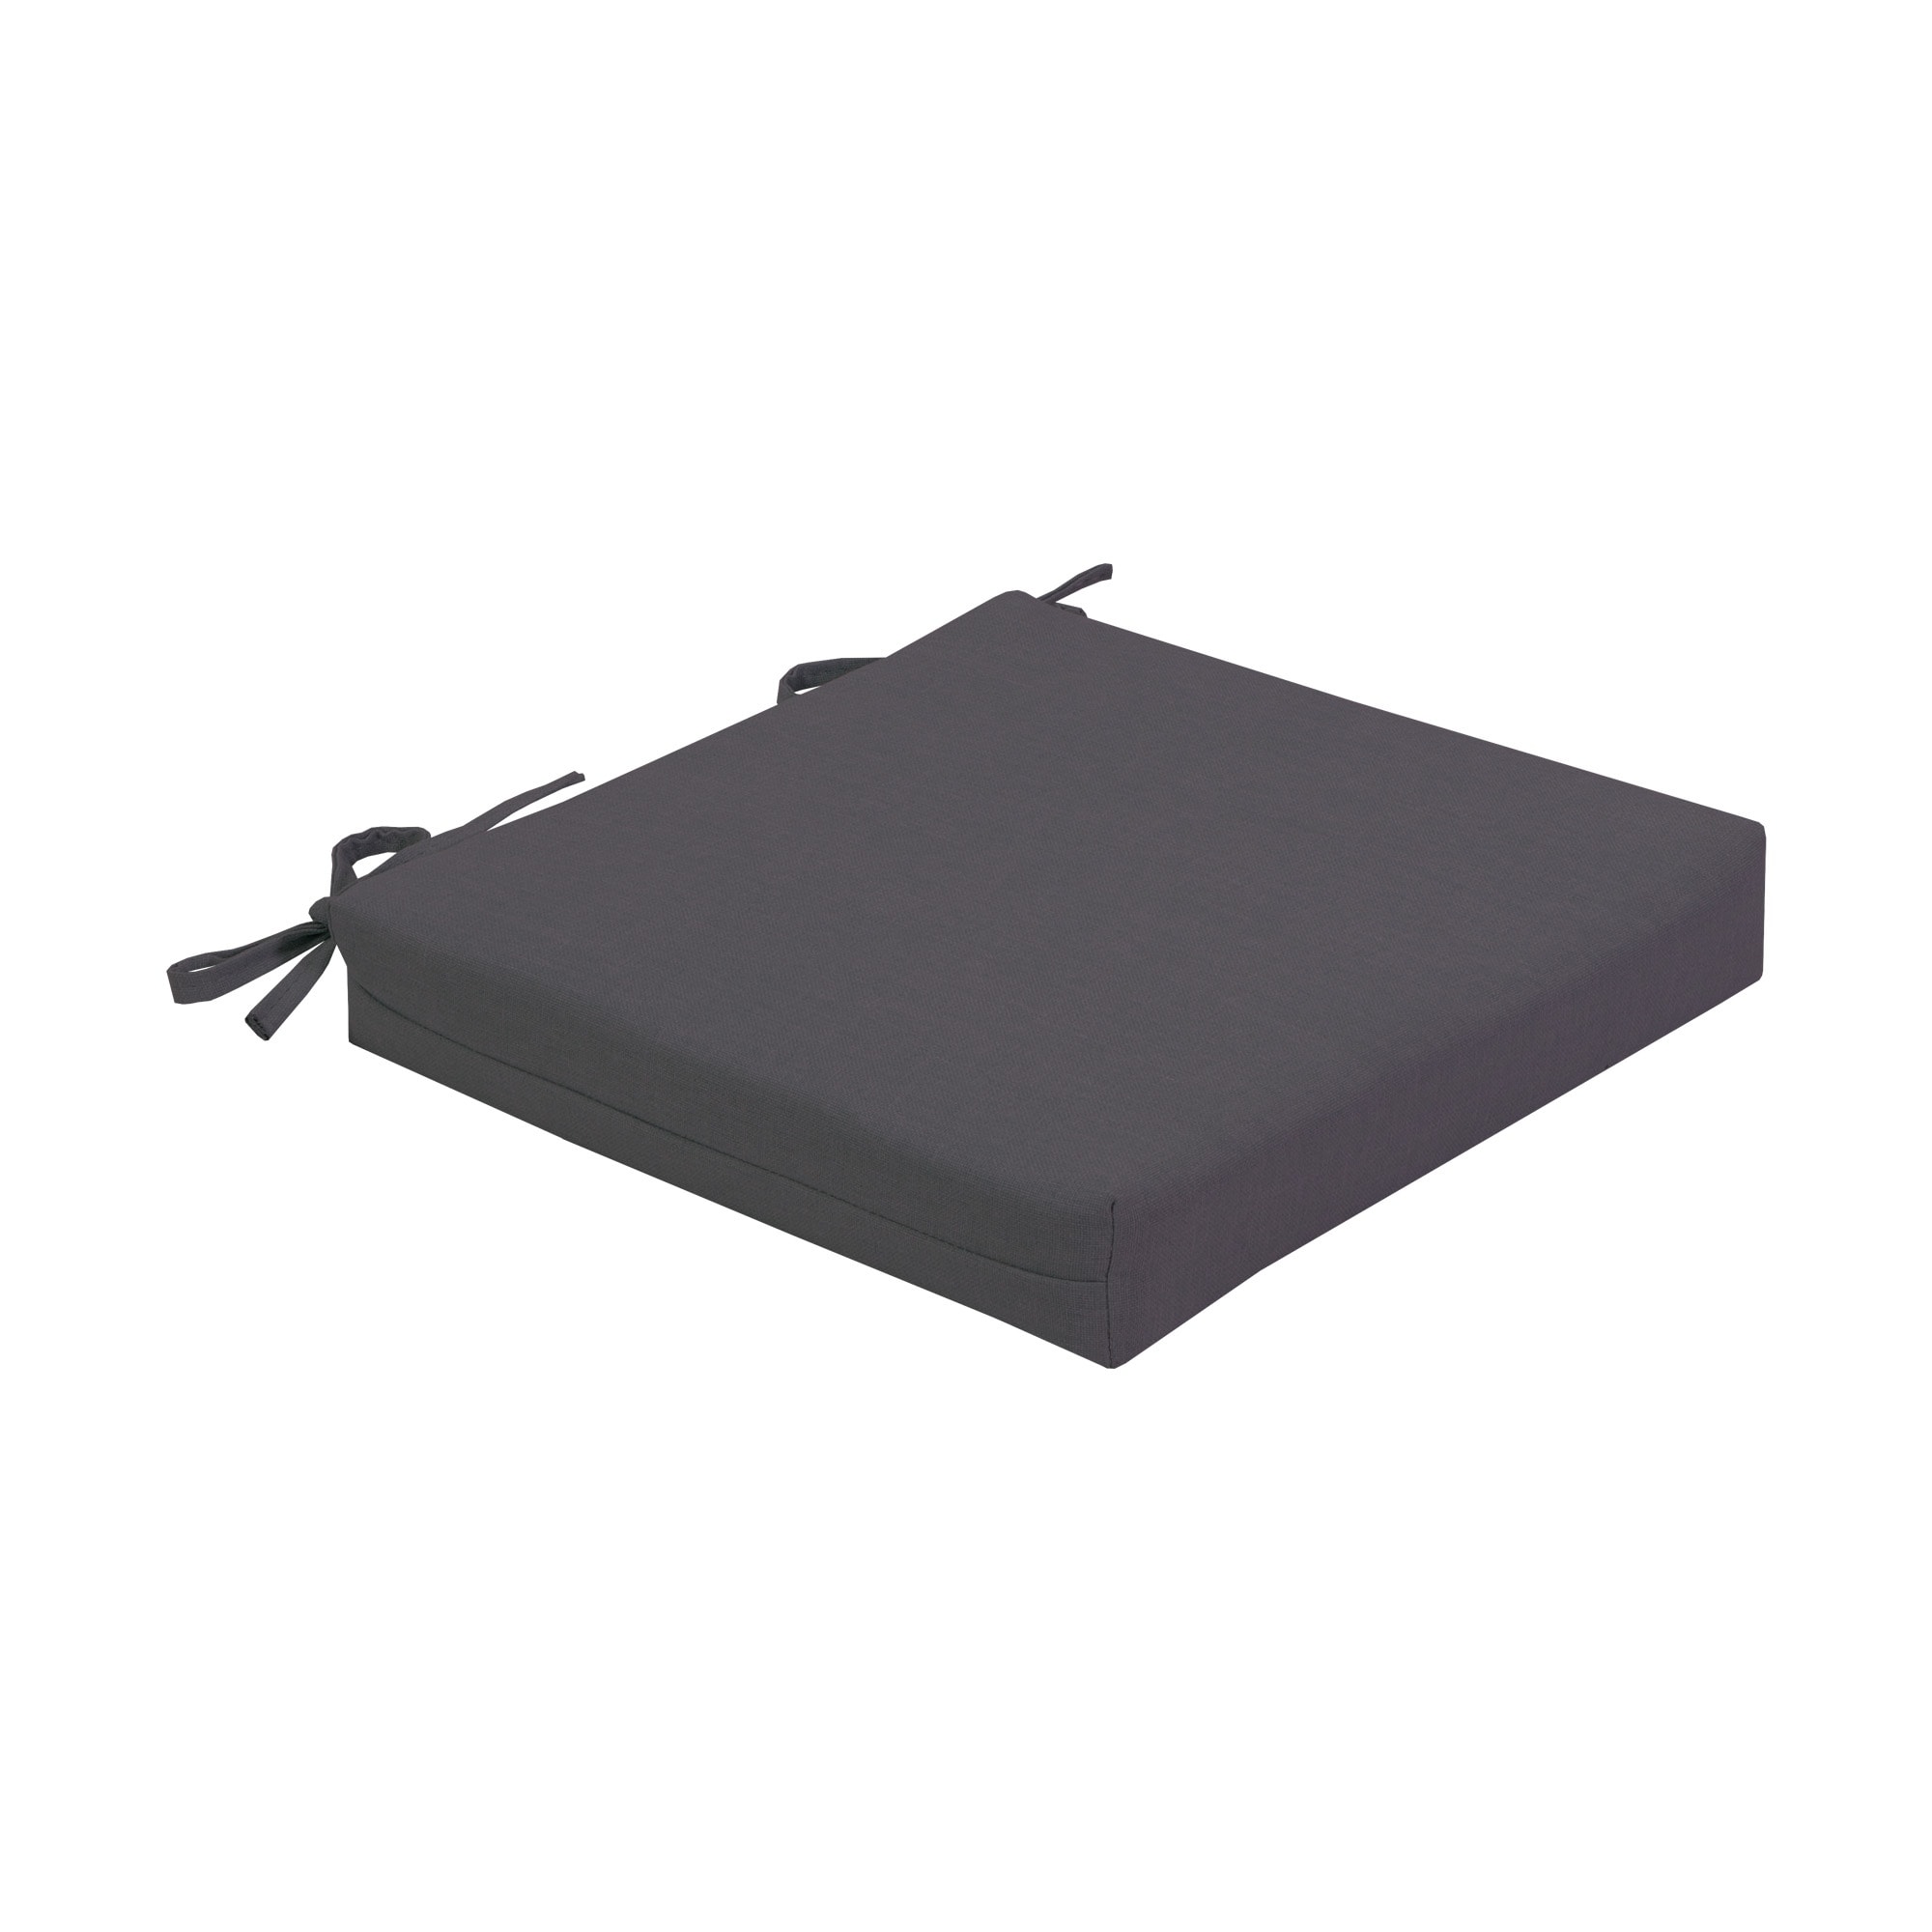 Subrtex Soft Support High Density Craft Cushion Foam RV Foam, 18 inchx 18 inchx 2 inch, Size: H2xW18xL18